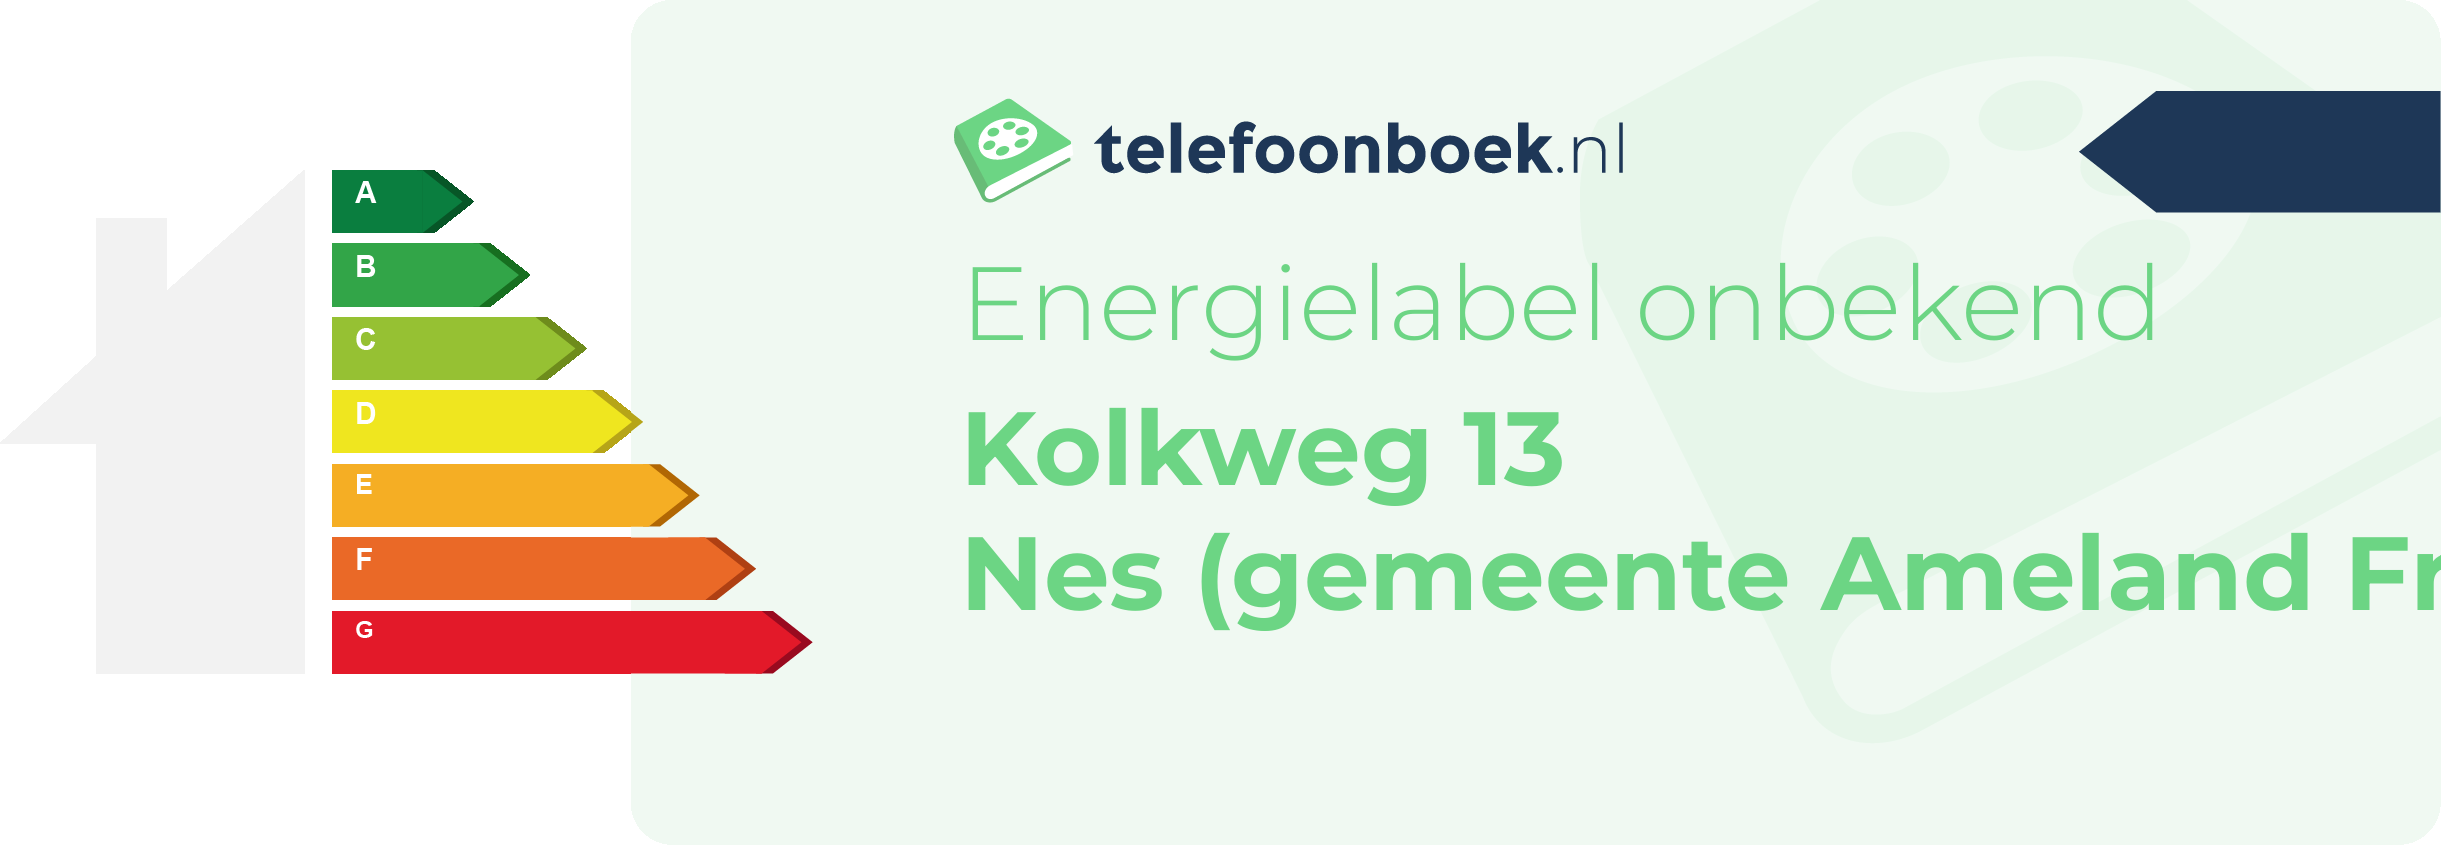 Energielabel Kolkweg 13 Nes (gemeente Ameland Friesland)